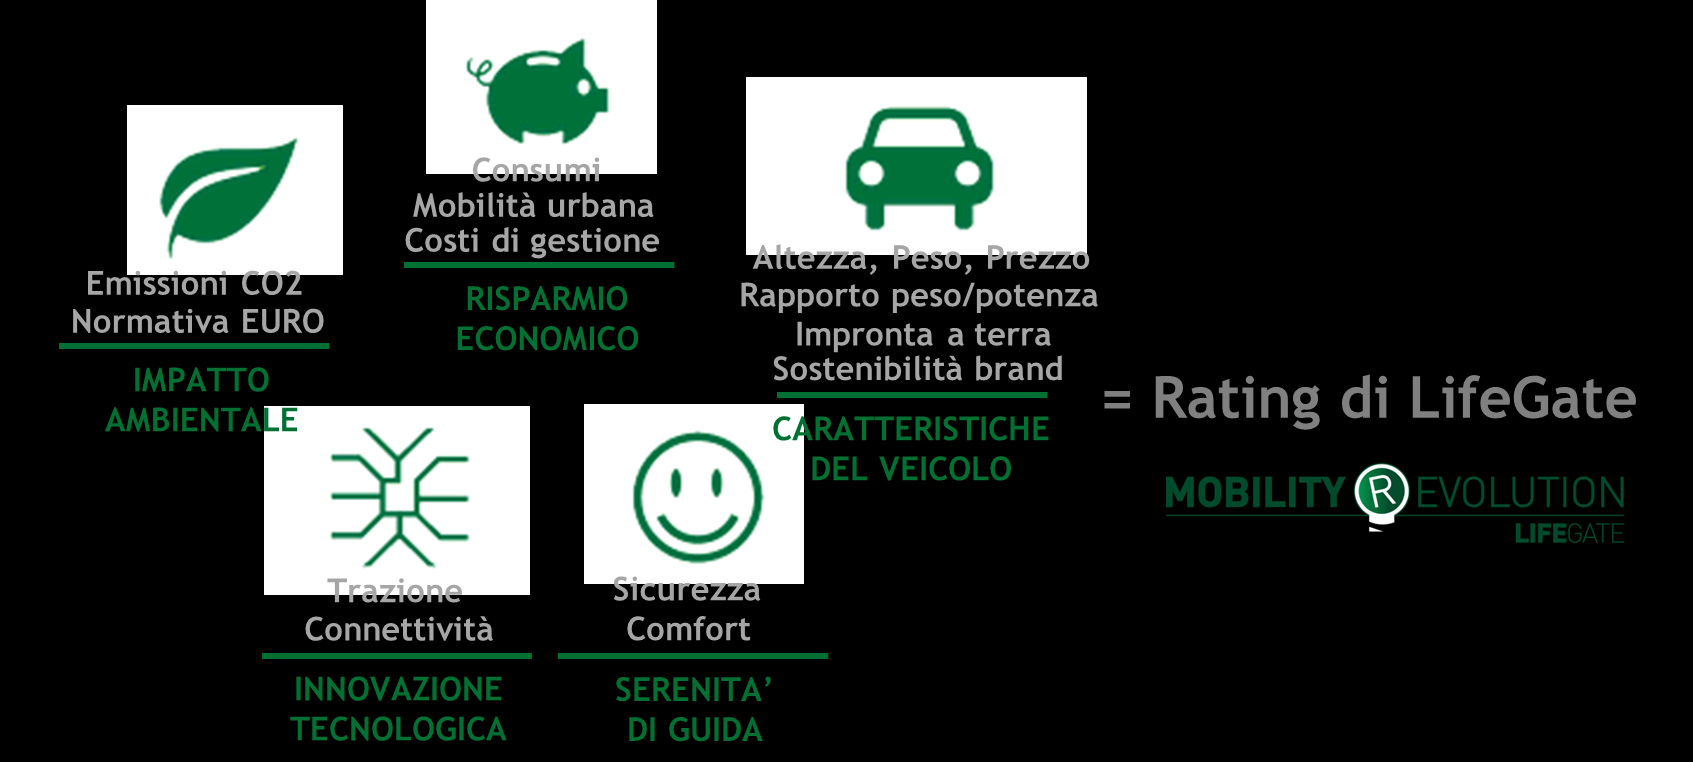 Rating Mobility Revolution LifeGate ha sviluppato un Rating per valutare e confrontare singole vetture o intere flotte aziendali in base al loro livello di sostenibilità, in rapporto alle